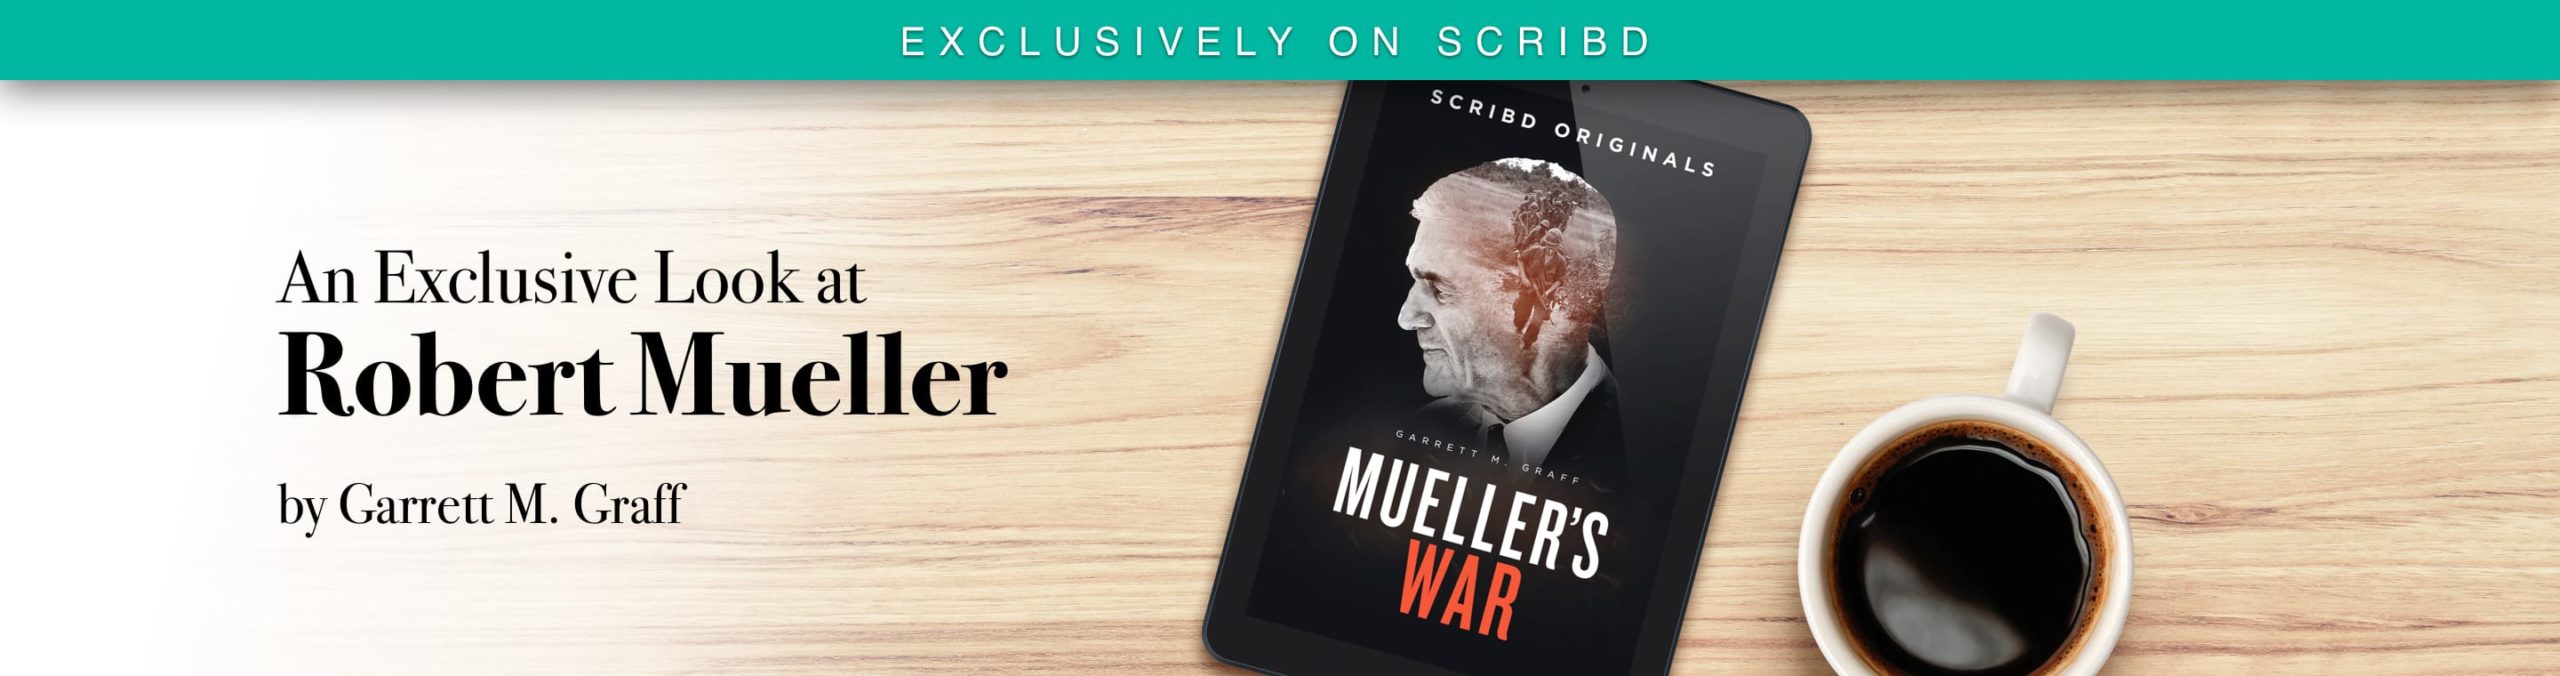 Our First Scribd Original: Mueller’s War